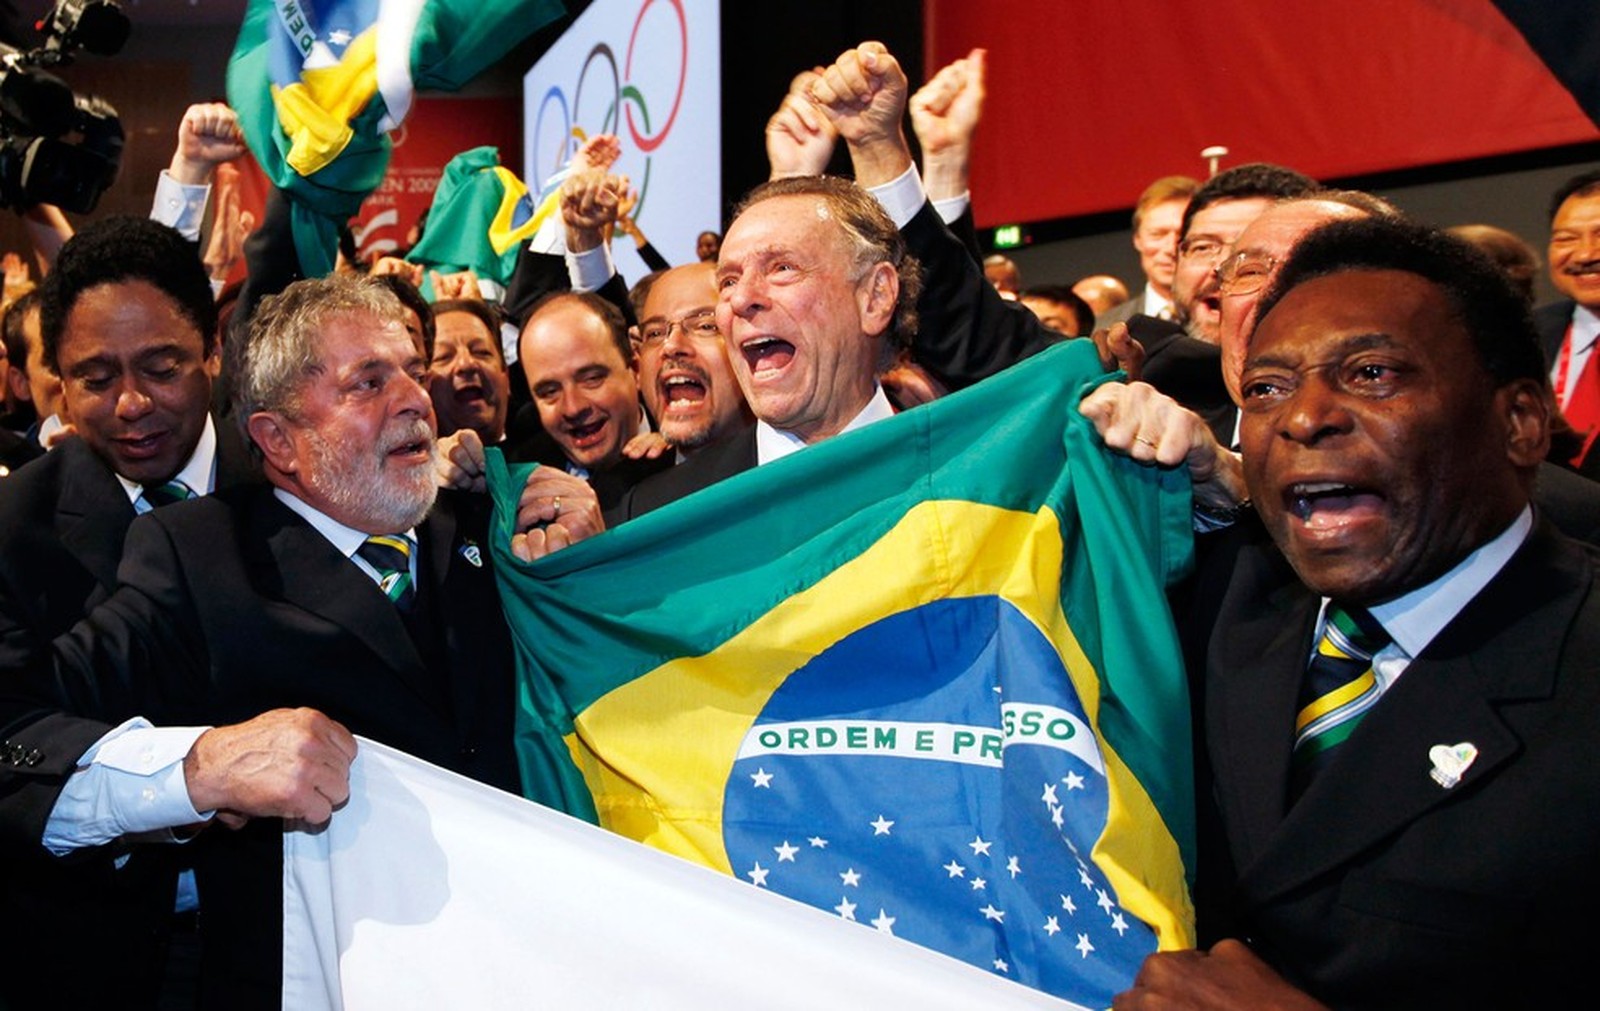 Presidente Lula, presidente do Comitê Rio 2016 Carlos Arthur Nuzman e Pelé vibram com a vitória do Rio (Foto: AFP)